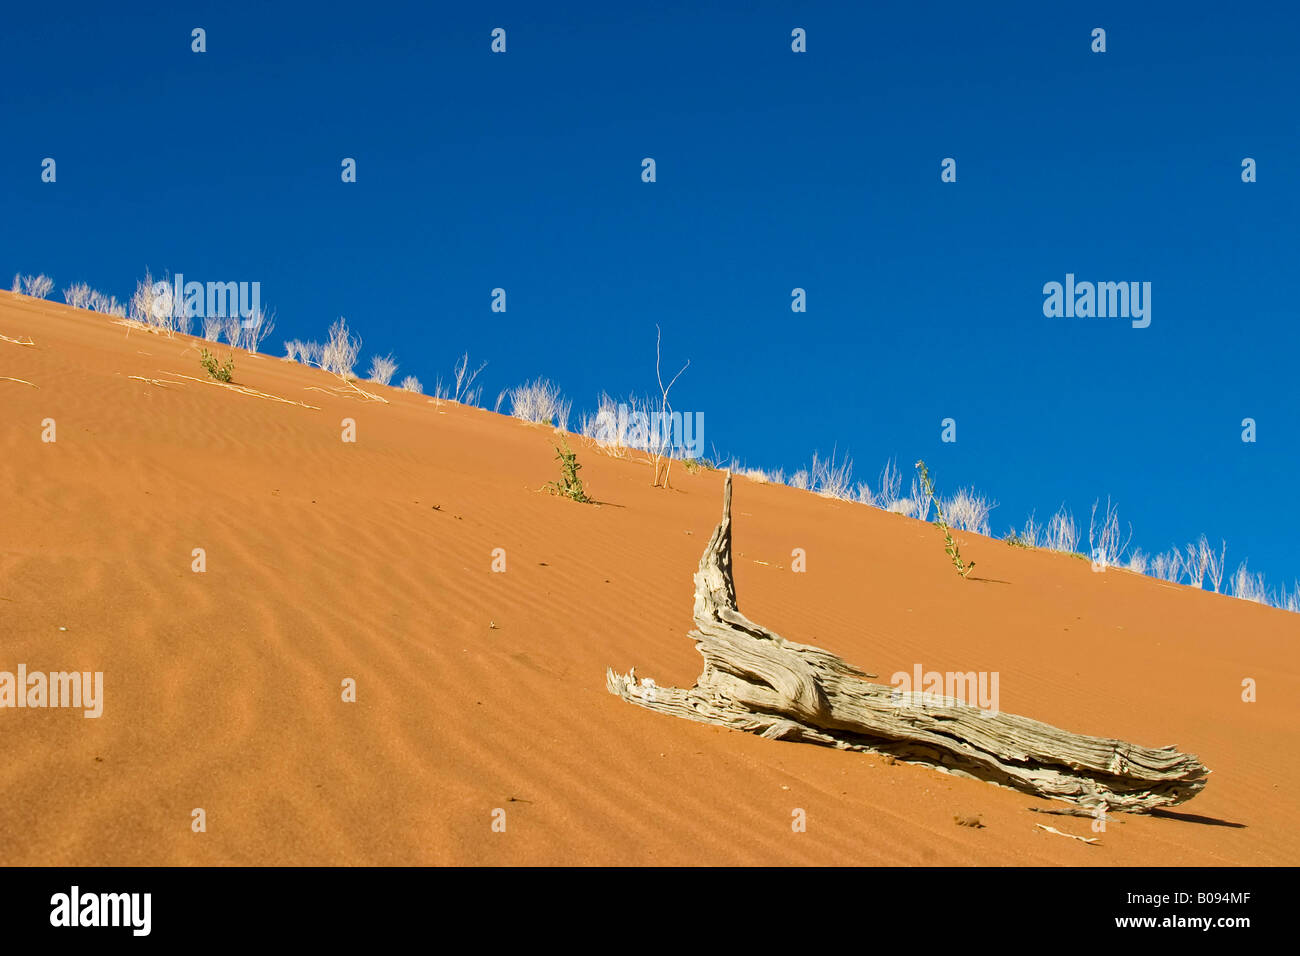 Dead tree on a dune in Deadvlei, Namib Desert, Namibia, Africa Stock Photo